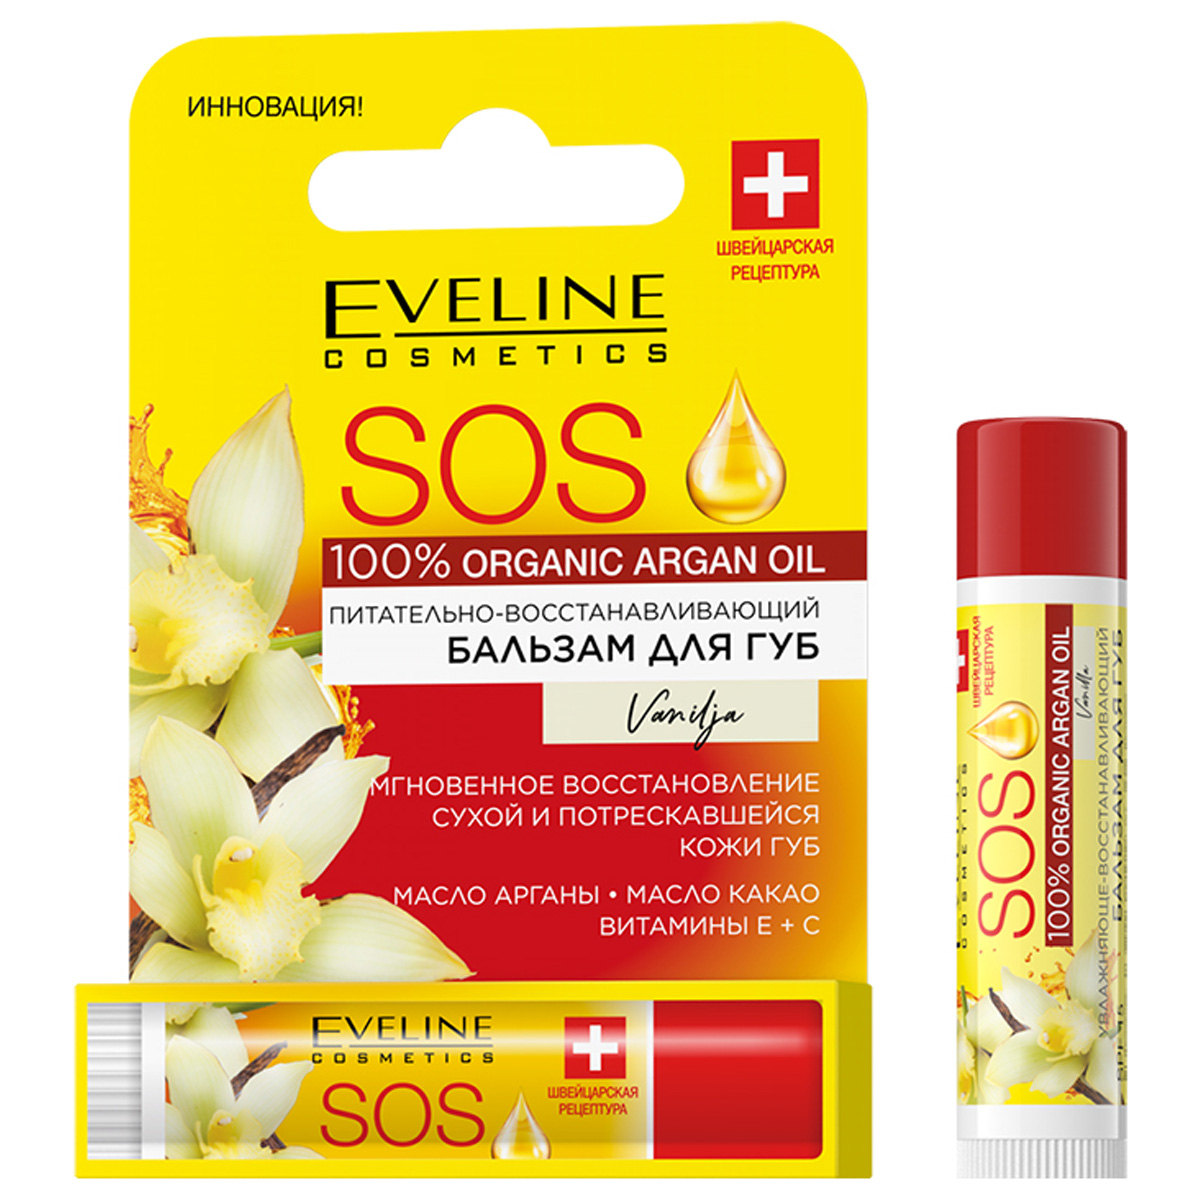 Бальзам для губ Eveline Cosmetics с аргановым маслом Vanilla 4,5г corine de farme бальзам ополаскиватель с аргановым маслом